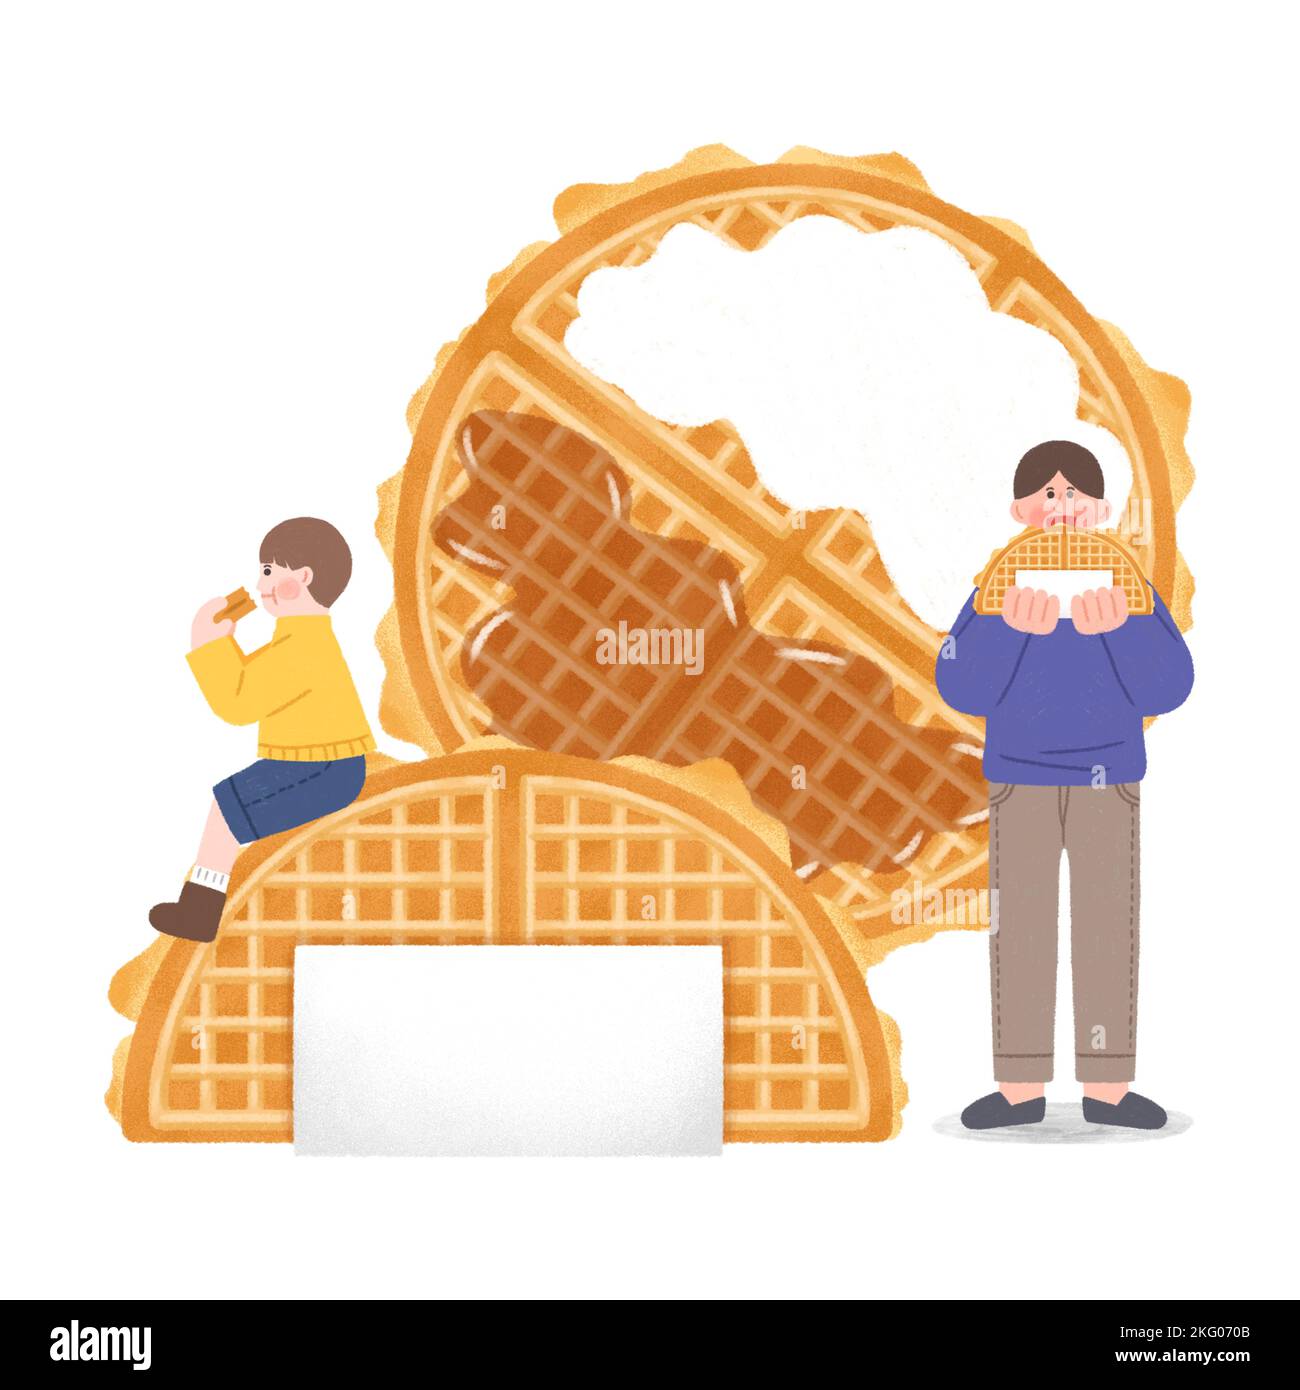 comida callejera de invierno coreana ilustration waffle Foto de stock